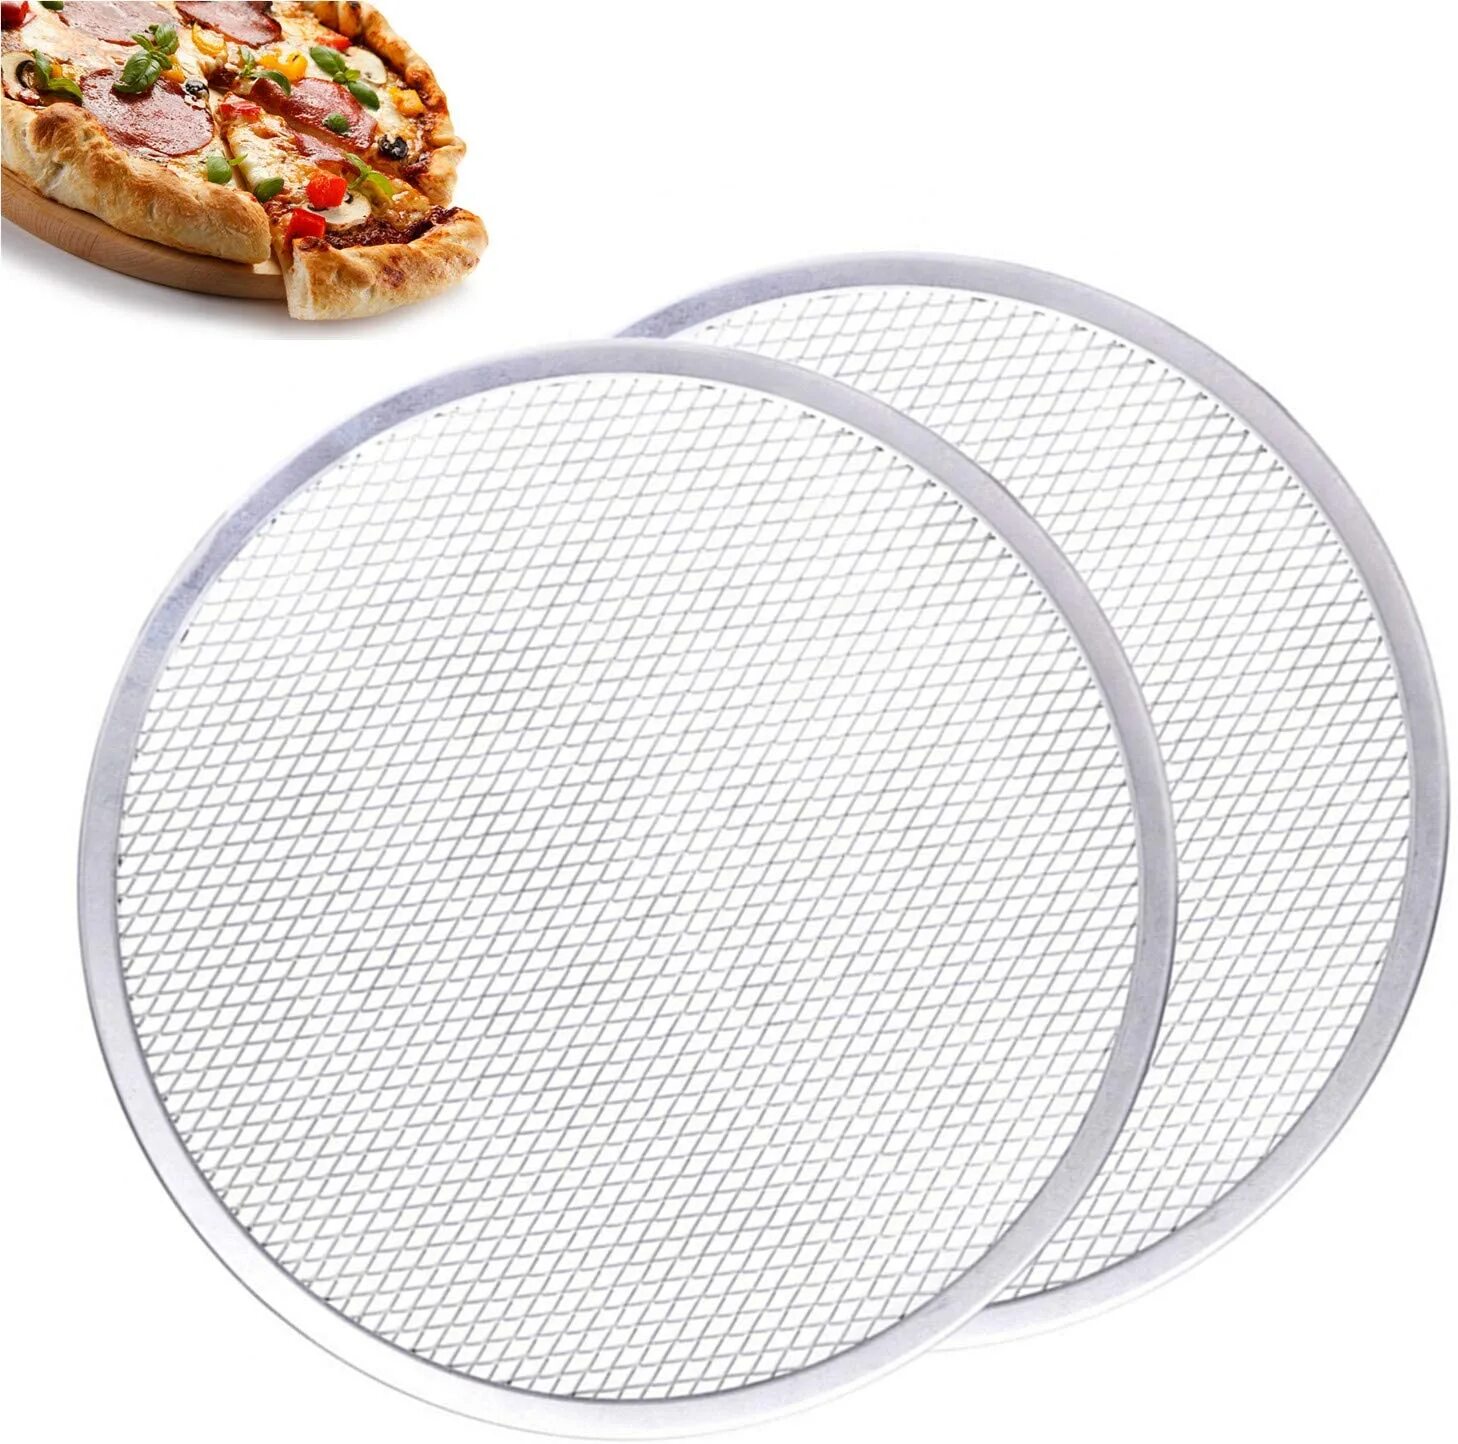 Сетка для пиццы. Setka dlya pitsa Stainless Steel pizza Mesh Plate 28sm. Бр-626 сетка для пиццы 14 36 см. Противень-сетка для пиццы d 28см, алюм. Ps11. Бр-625 сетка для пиццы "12" 30 см.